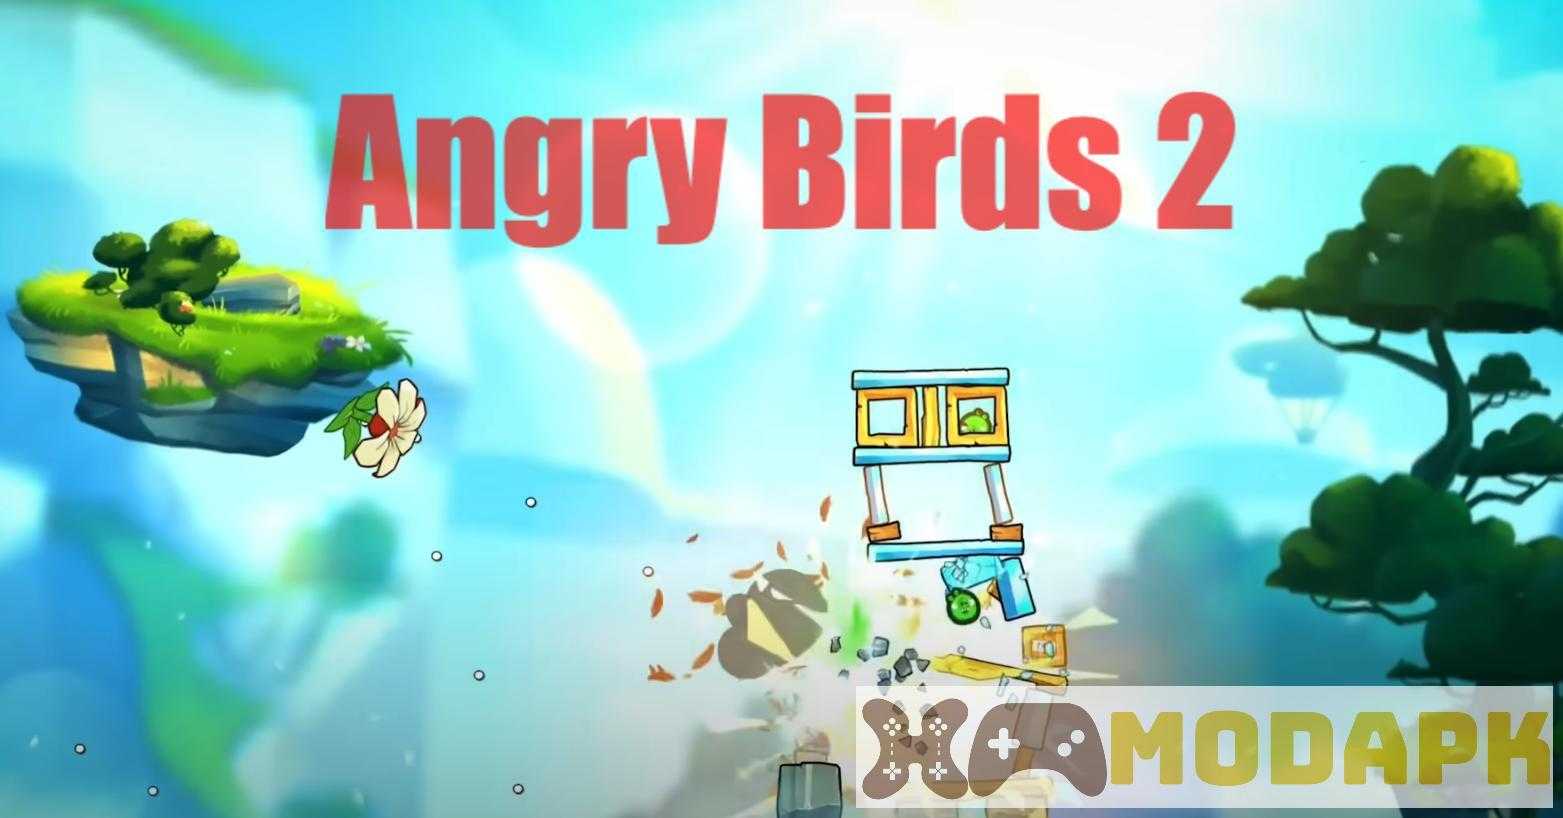 Angry Birds 2 MOD (Menu Pro, Tiền Full, Full Các Cấp Độ, Auto Phá) APK 3.22.2